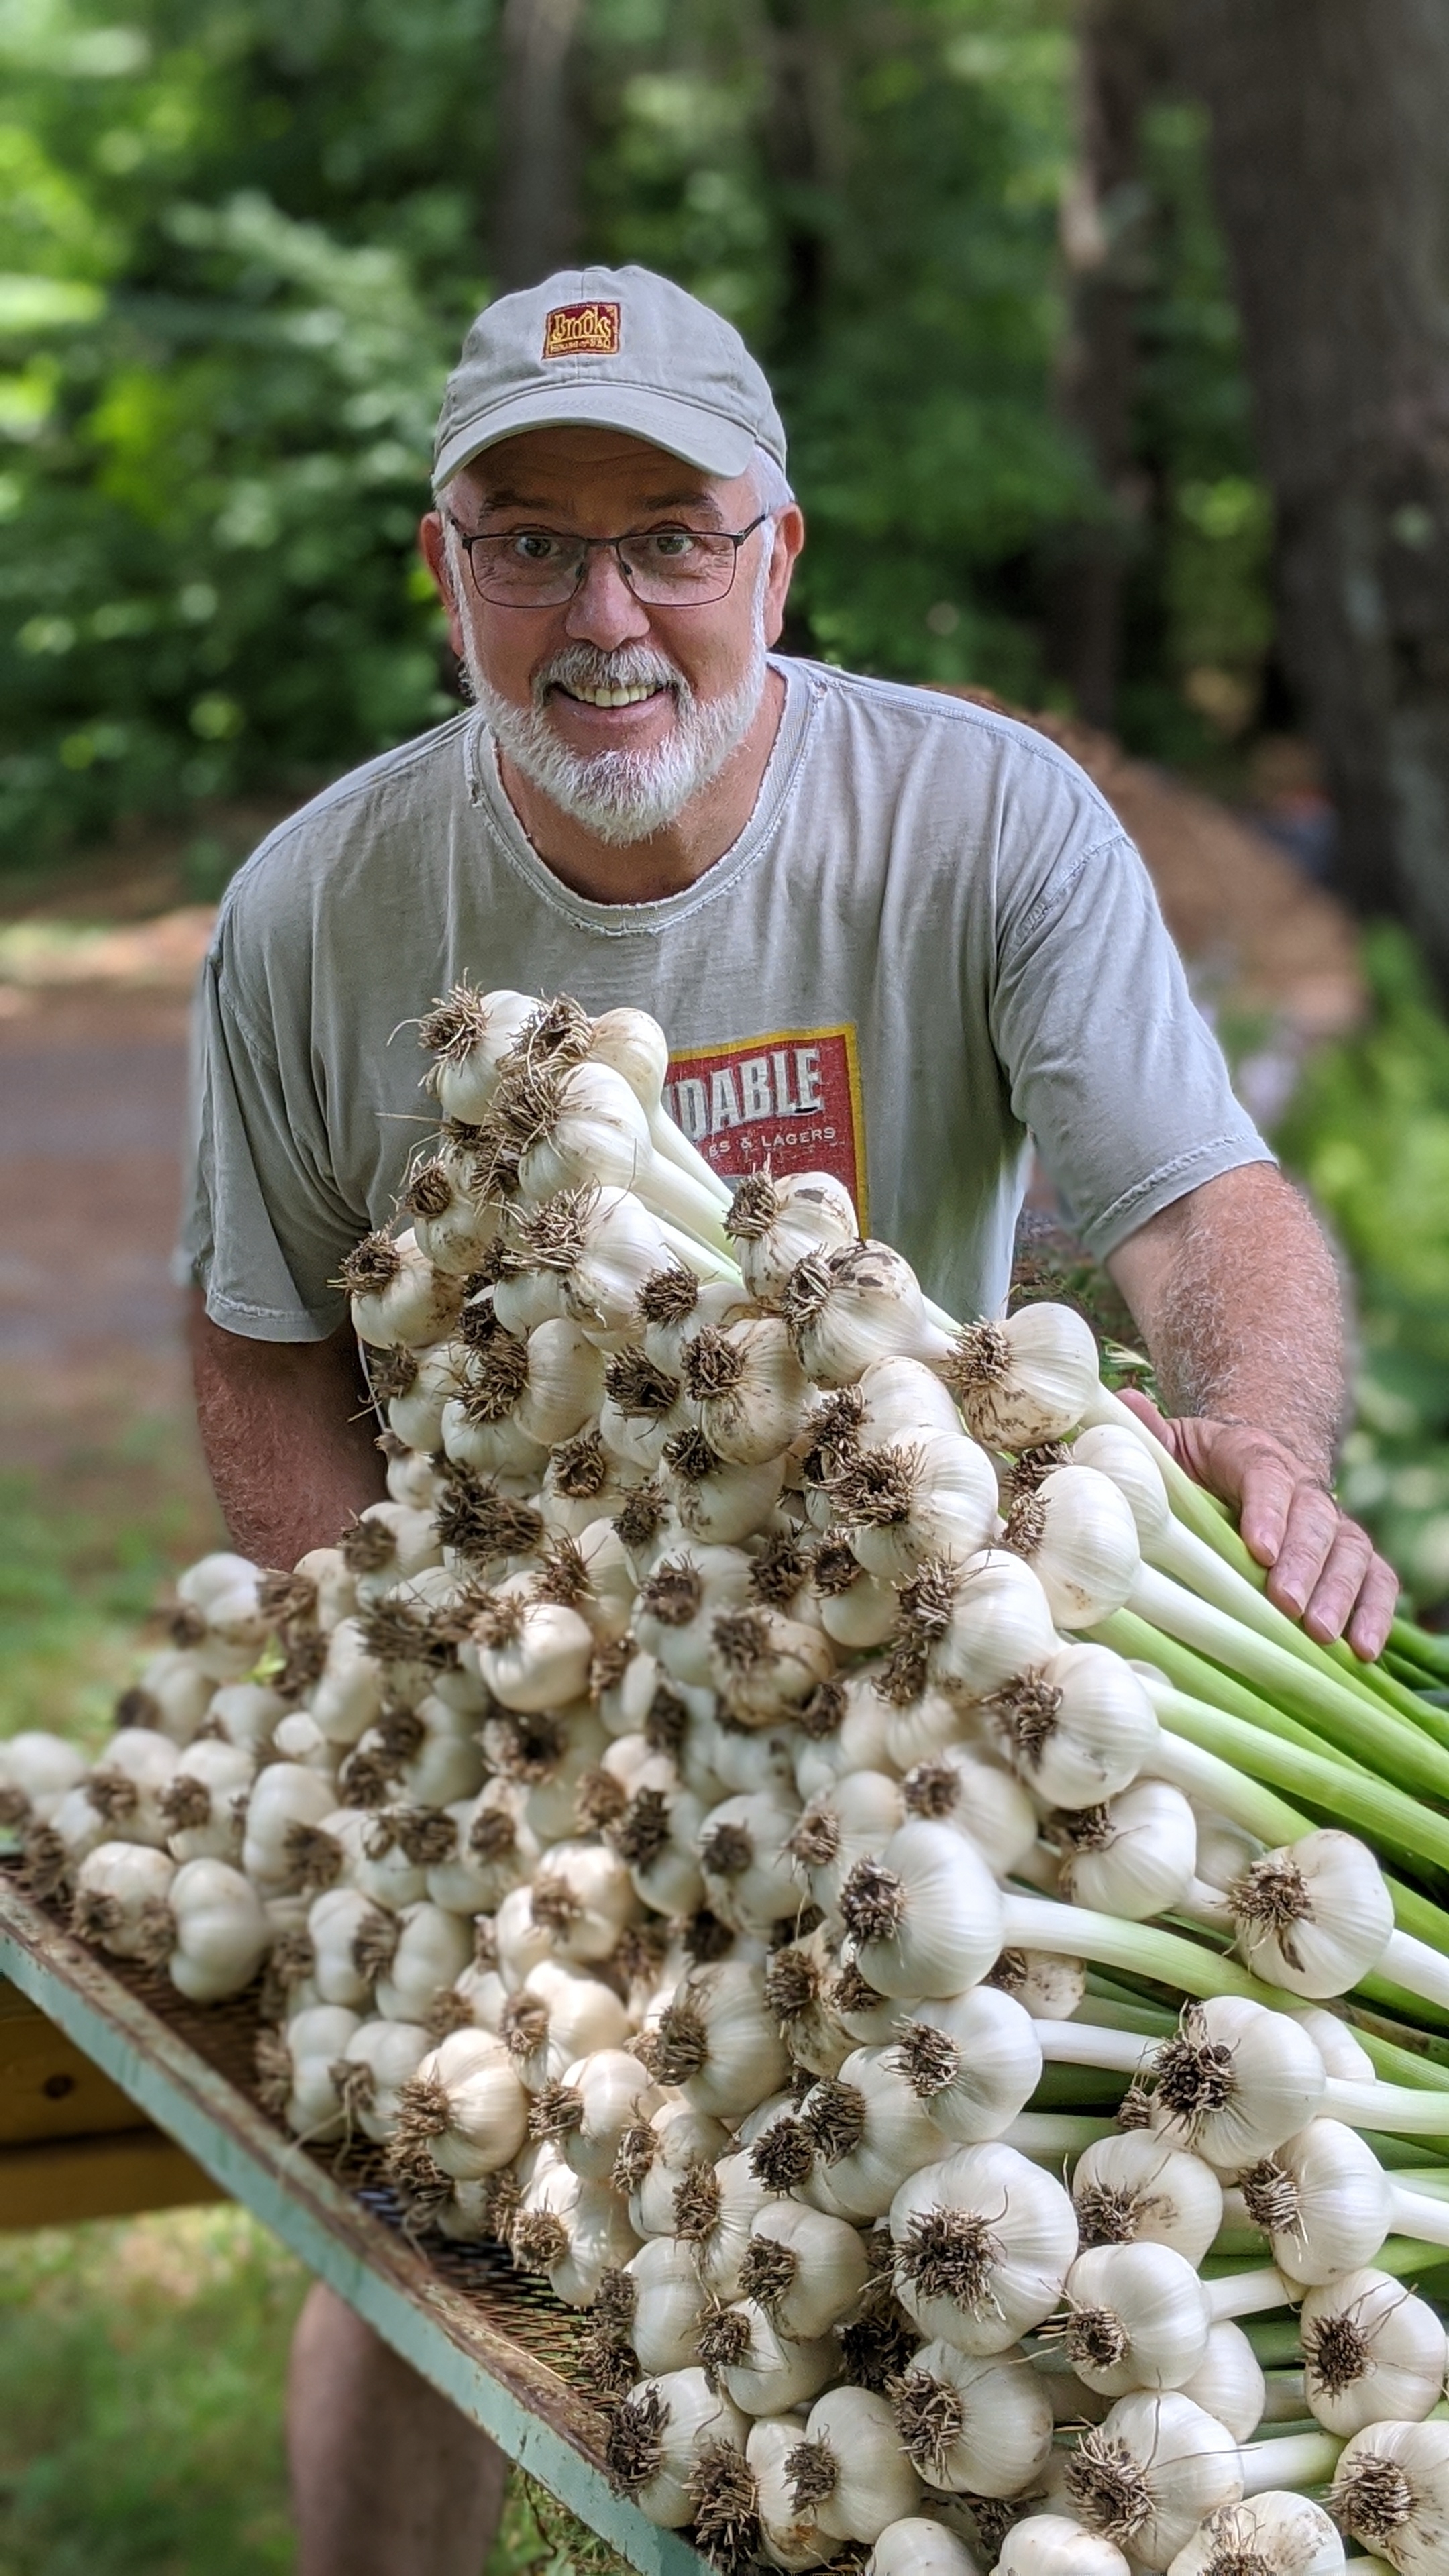 Shawn and his garlic